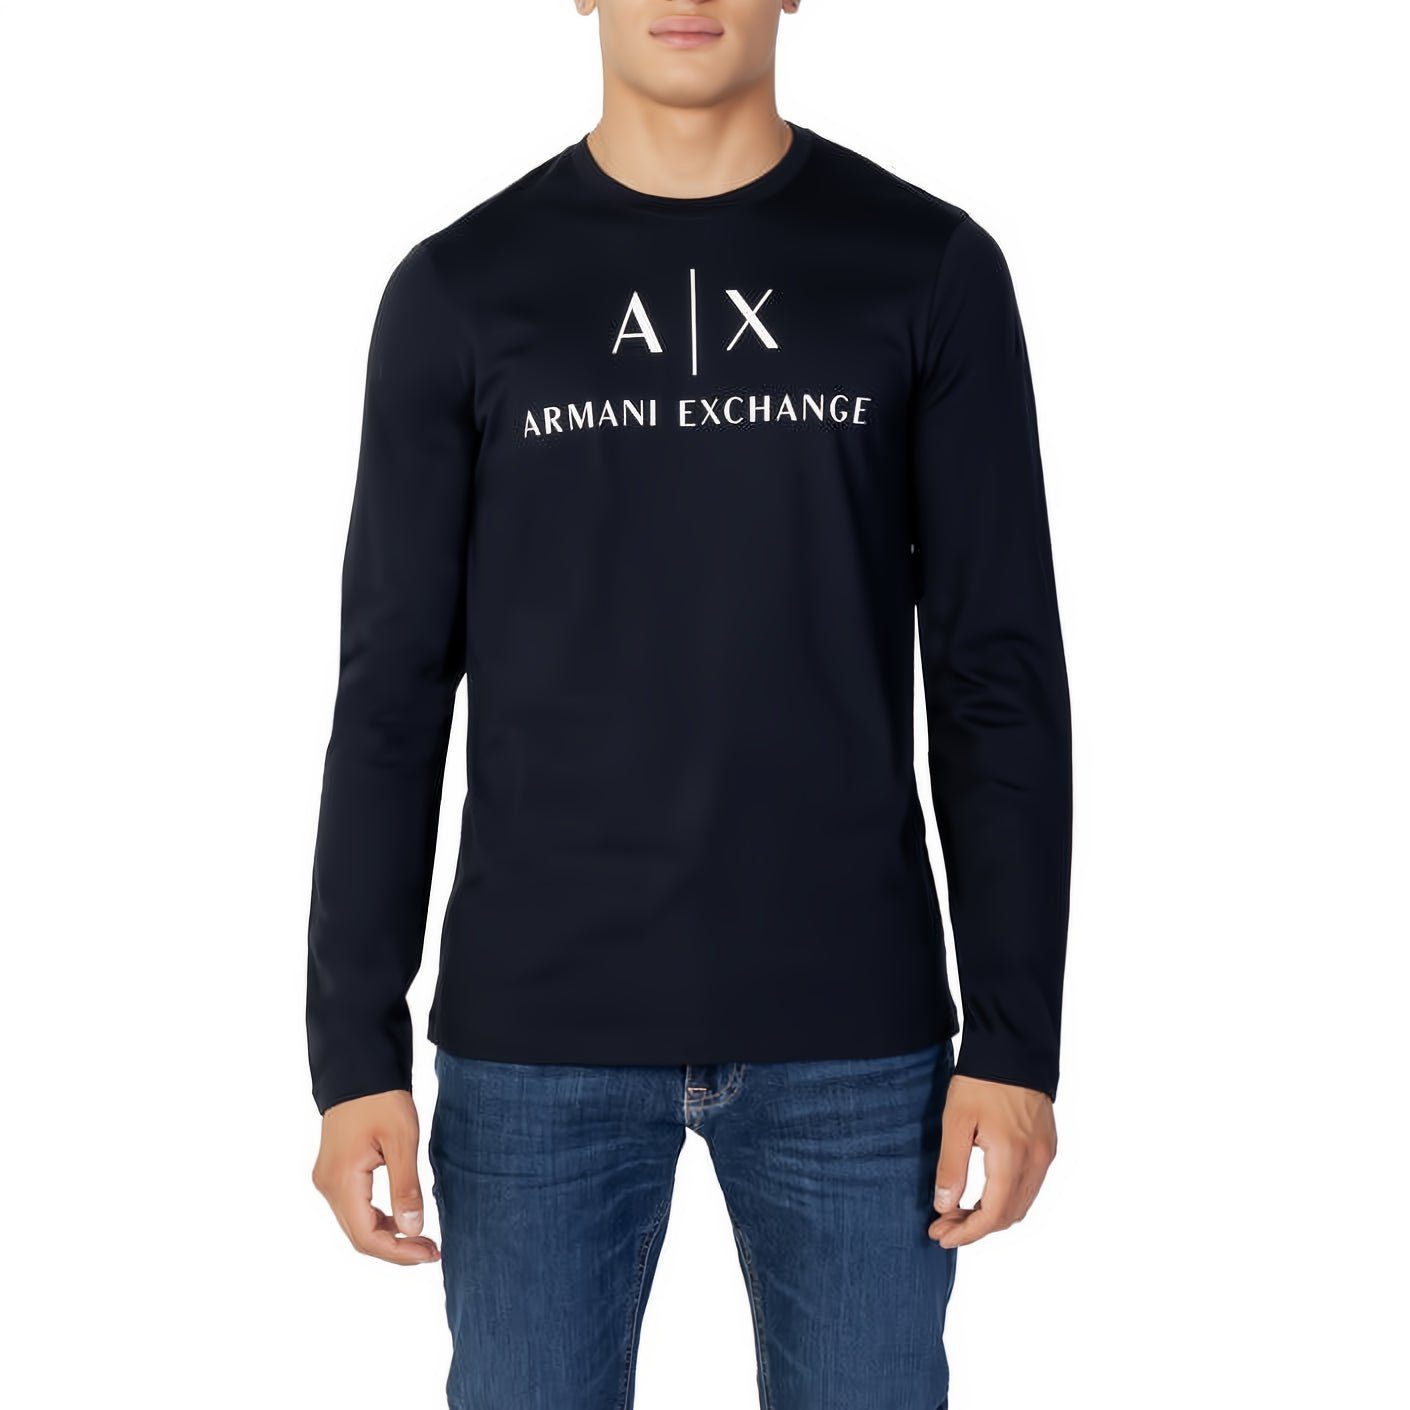 ARMANI EXCHANGE T-Shirt kurzarm, Rundhals, ein Must-Have für Ihre Kleidungskollektion! Marine